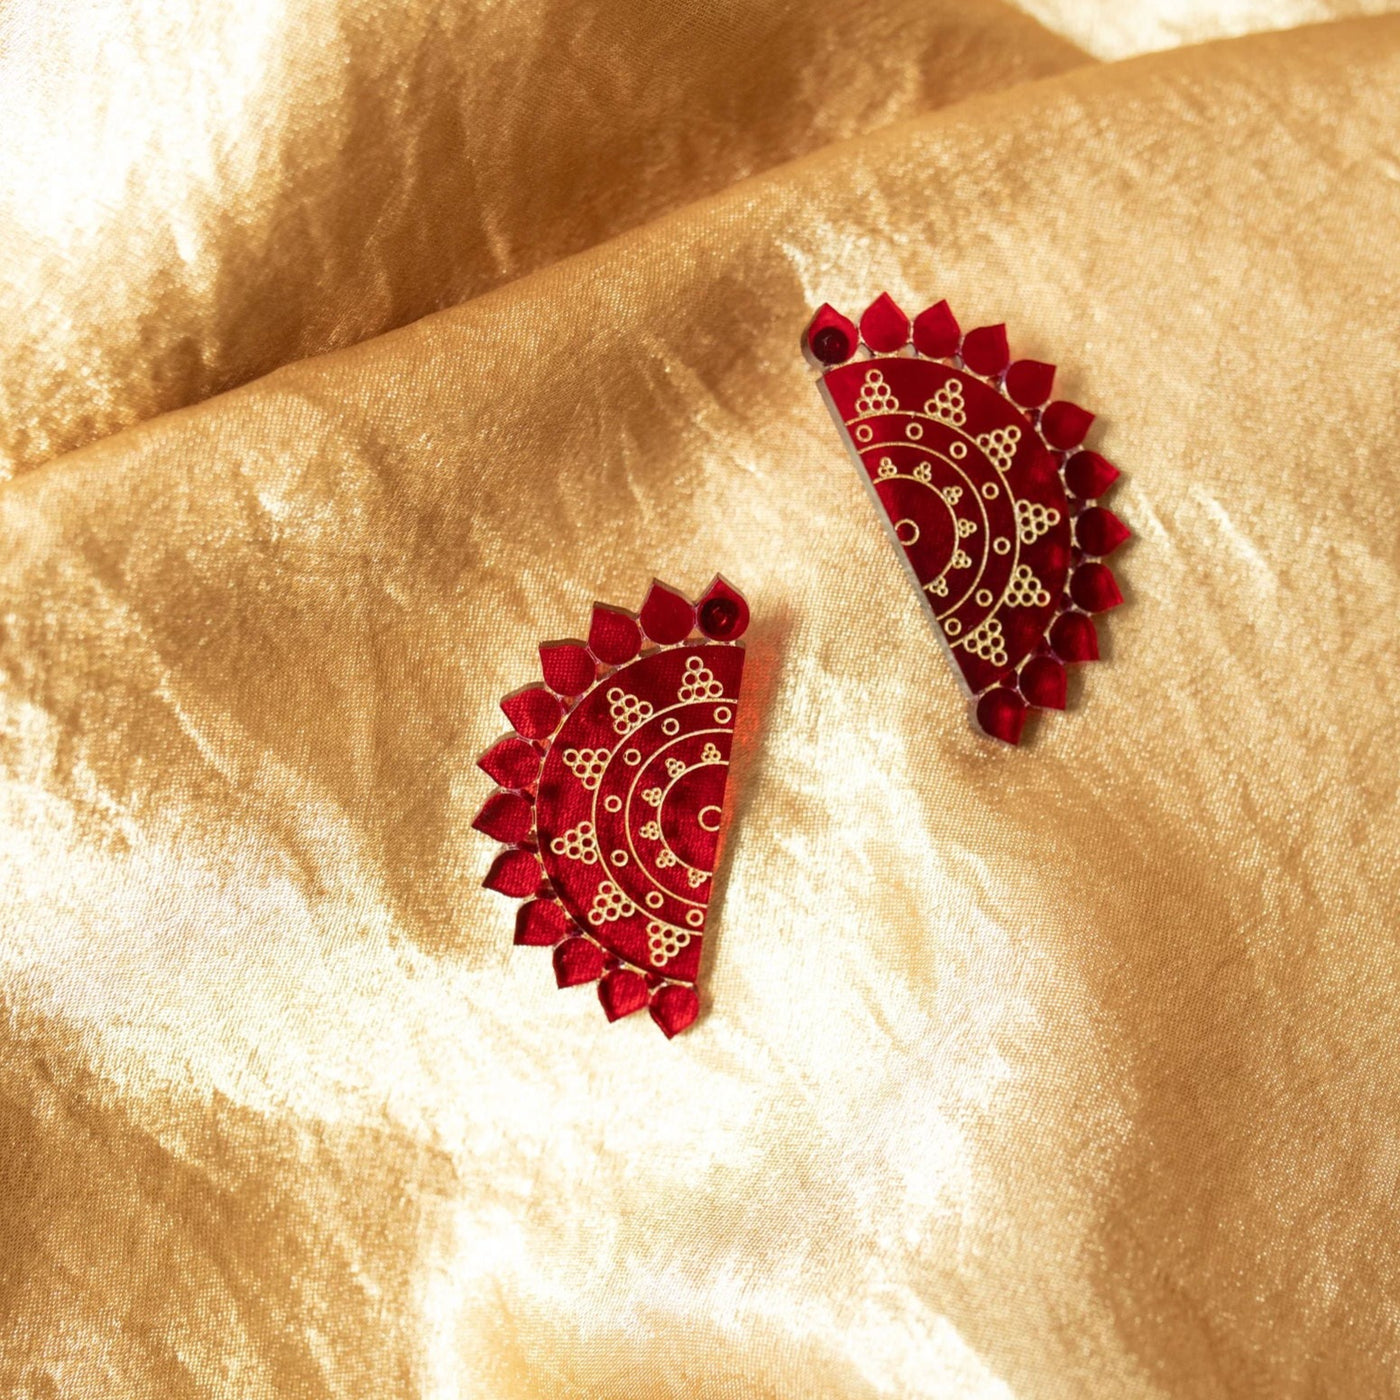 Randi Earrings by Snows Design